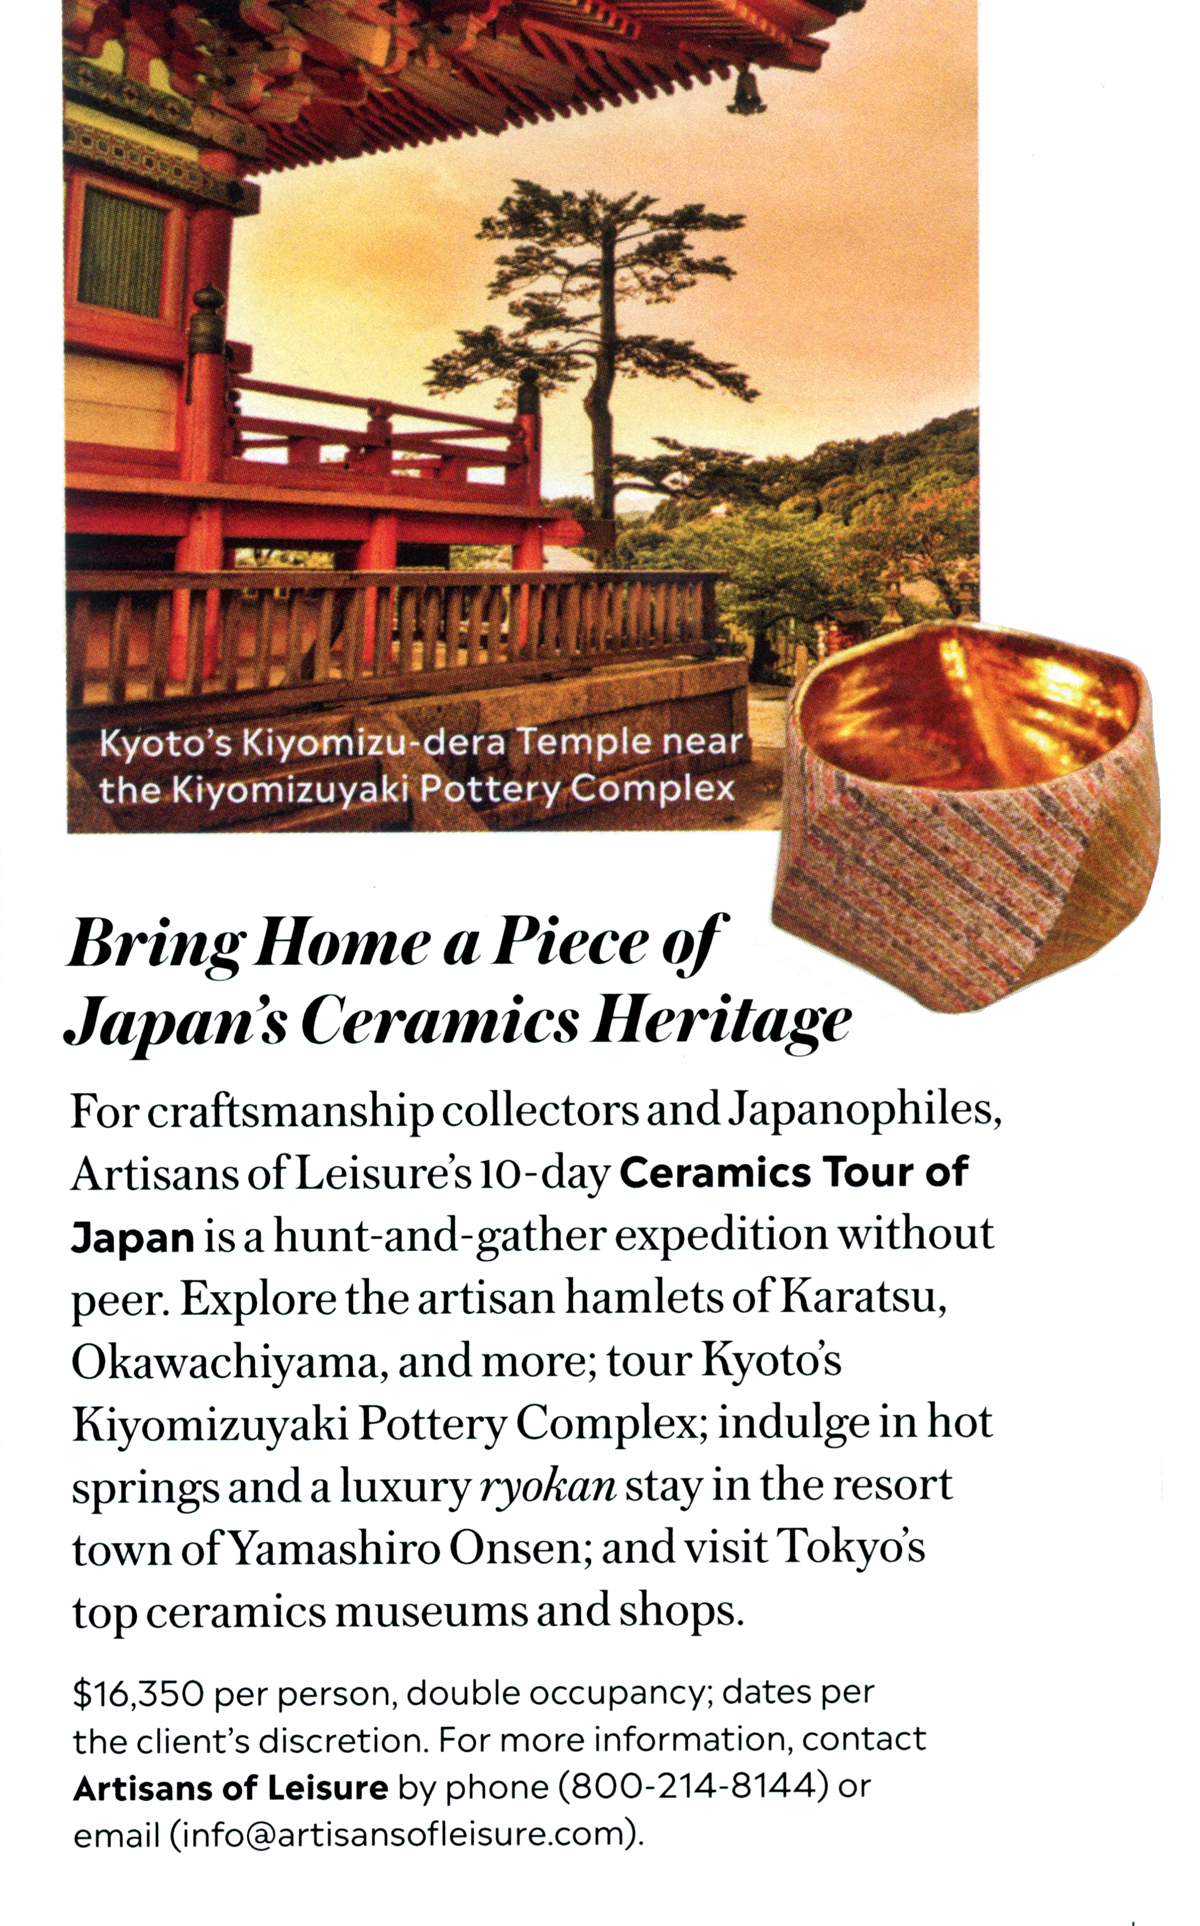 Ceramics Tour of Japan